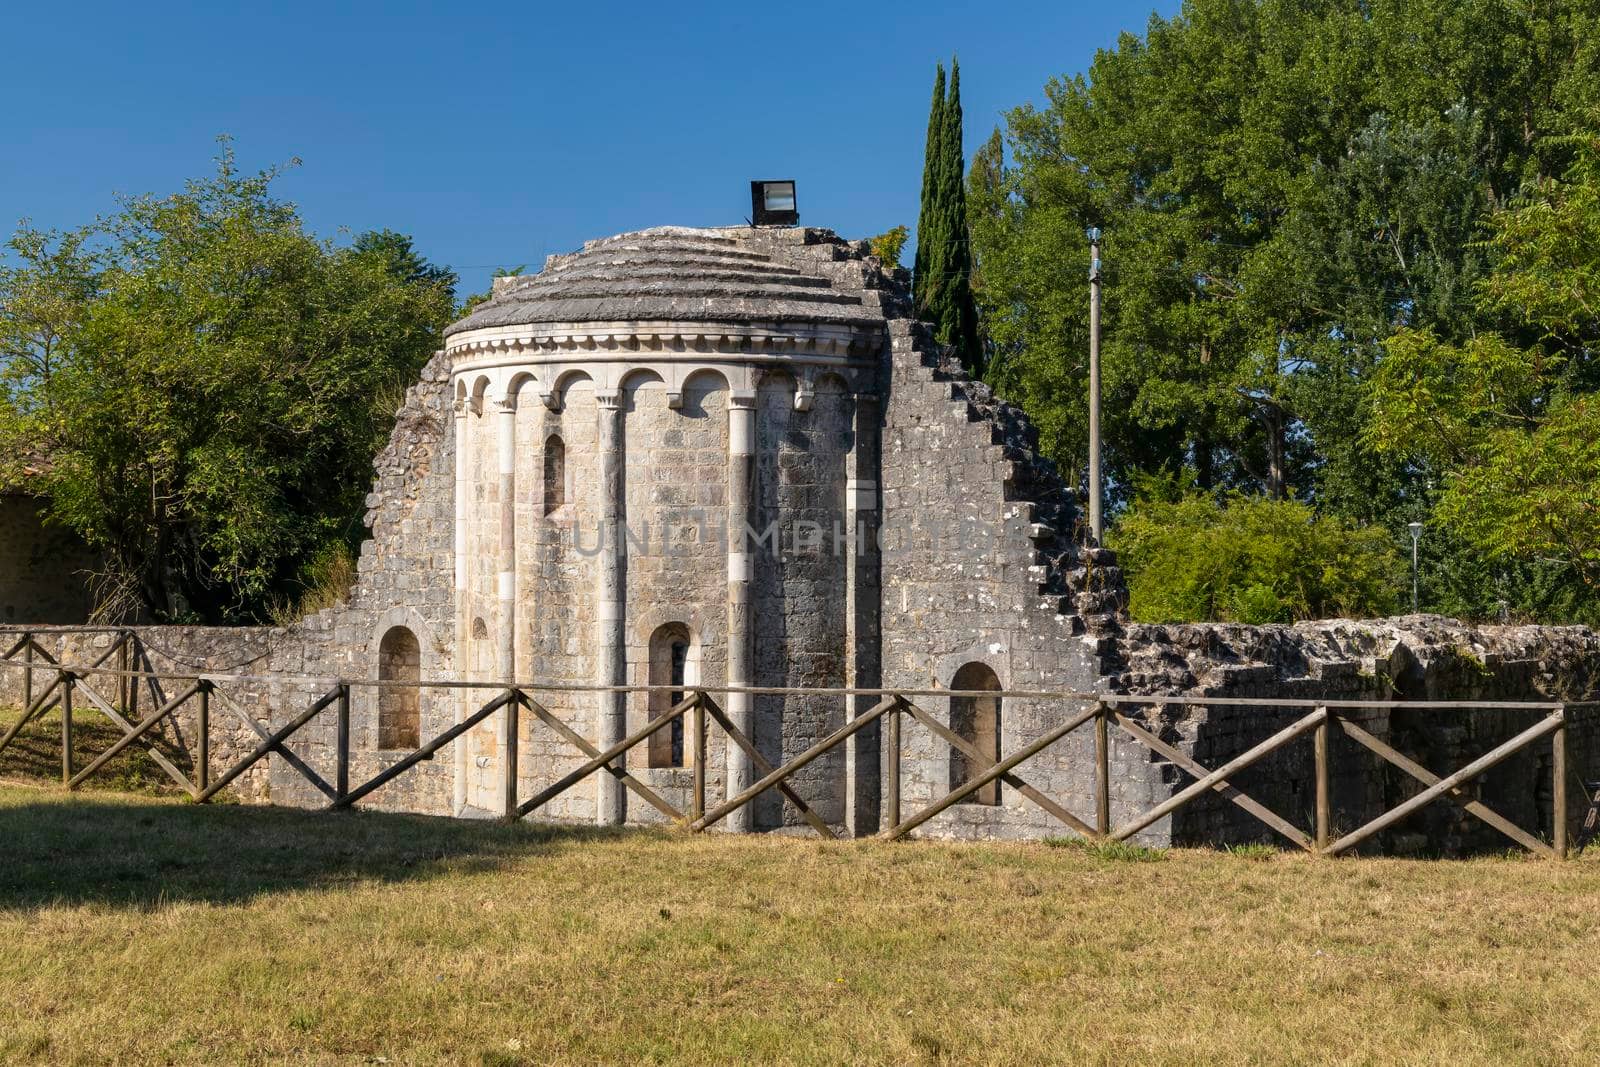 Santi Cipriano e Giustina church, Pissignano near Campello sul Clitunnoi, Umbria, Italy by phbcz